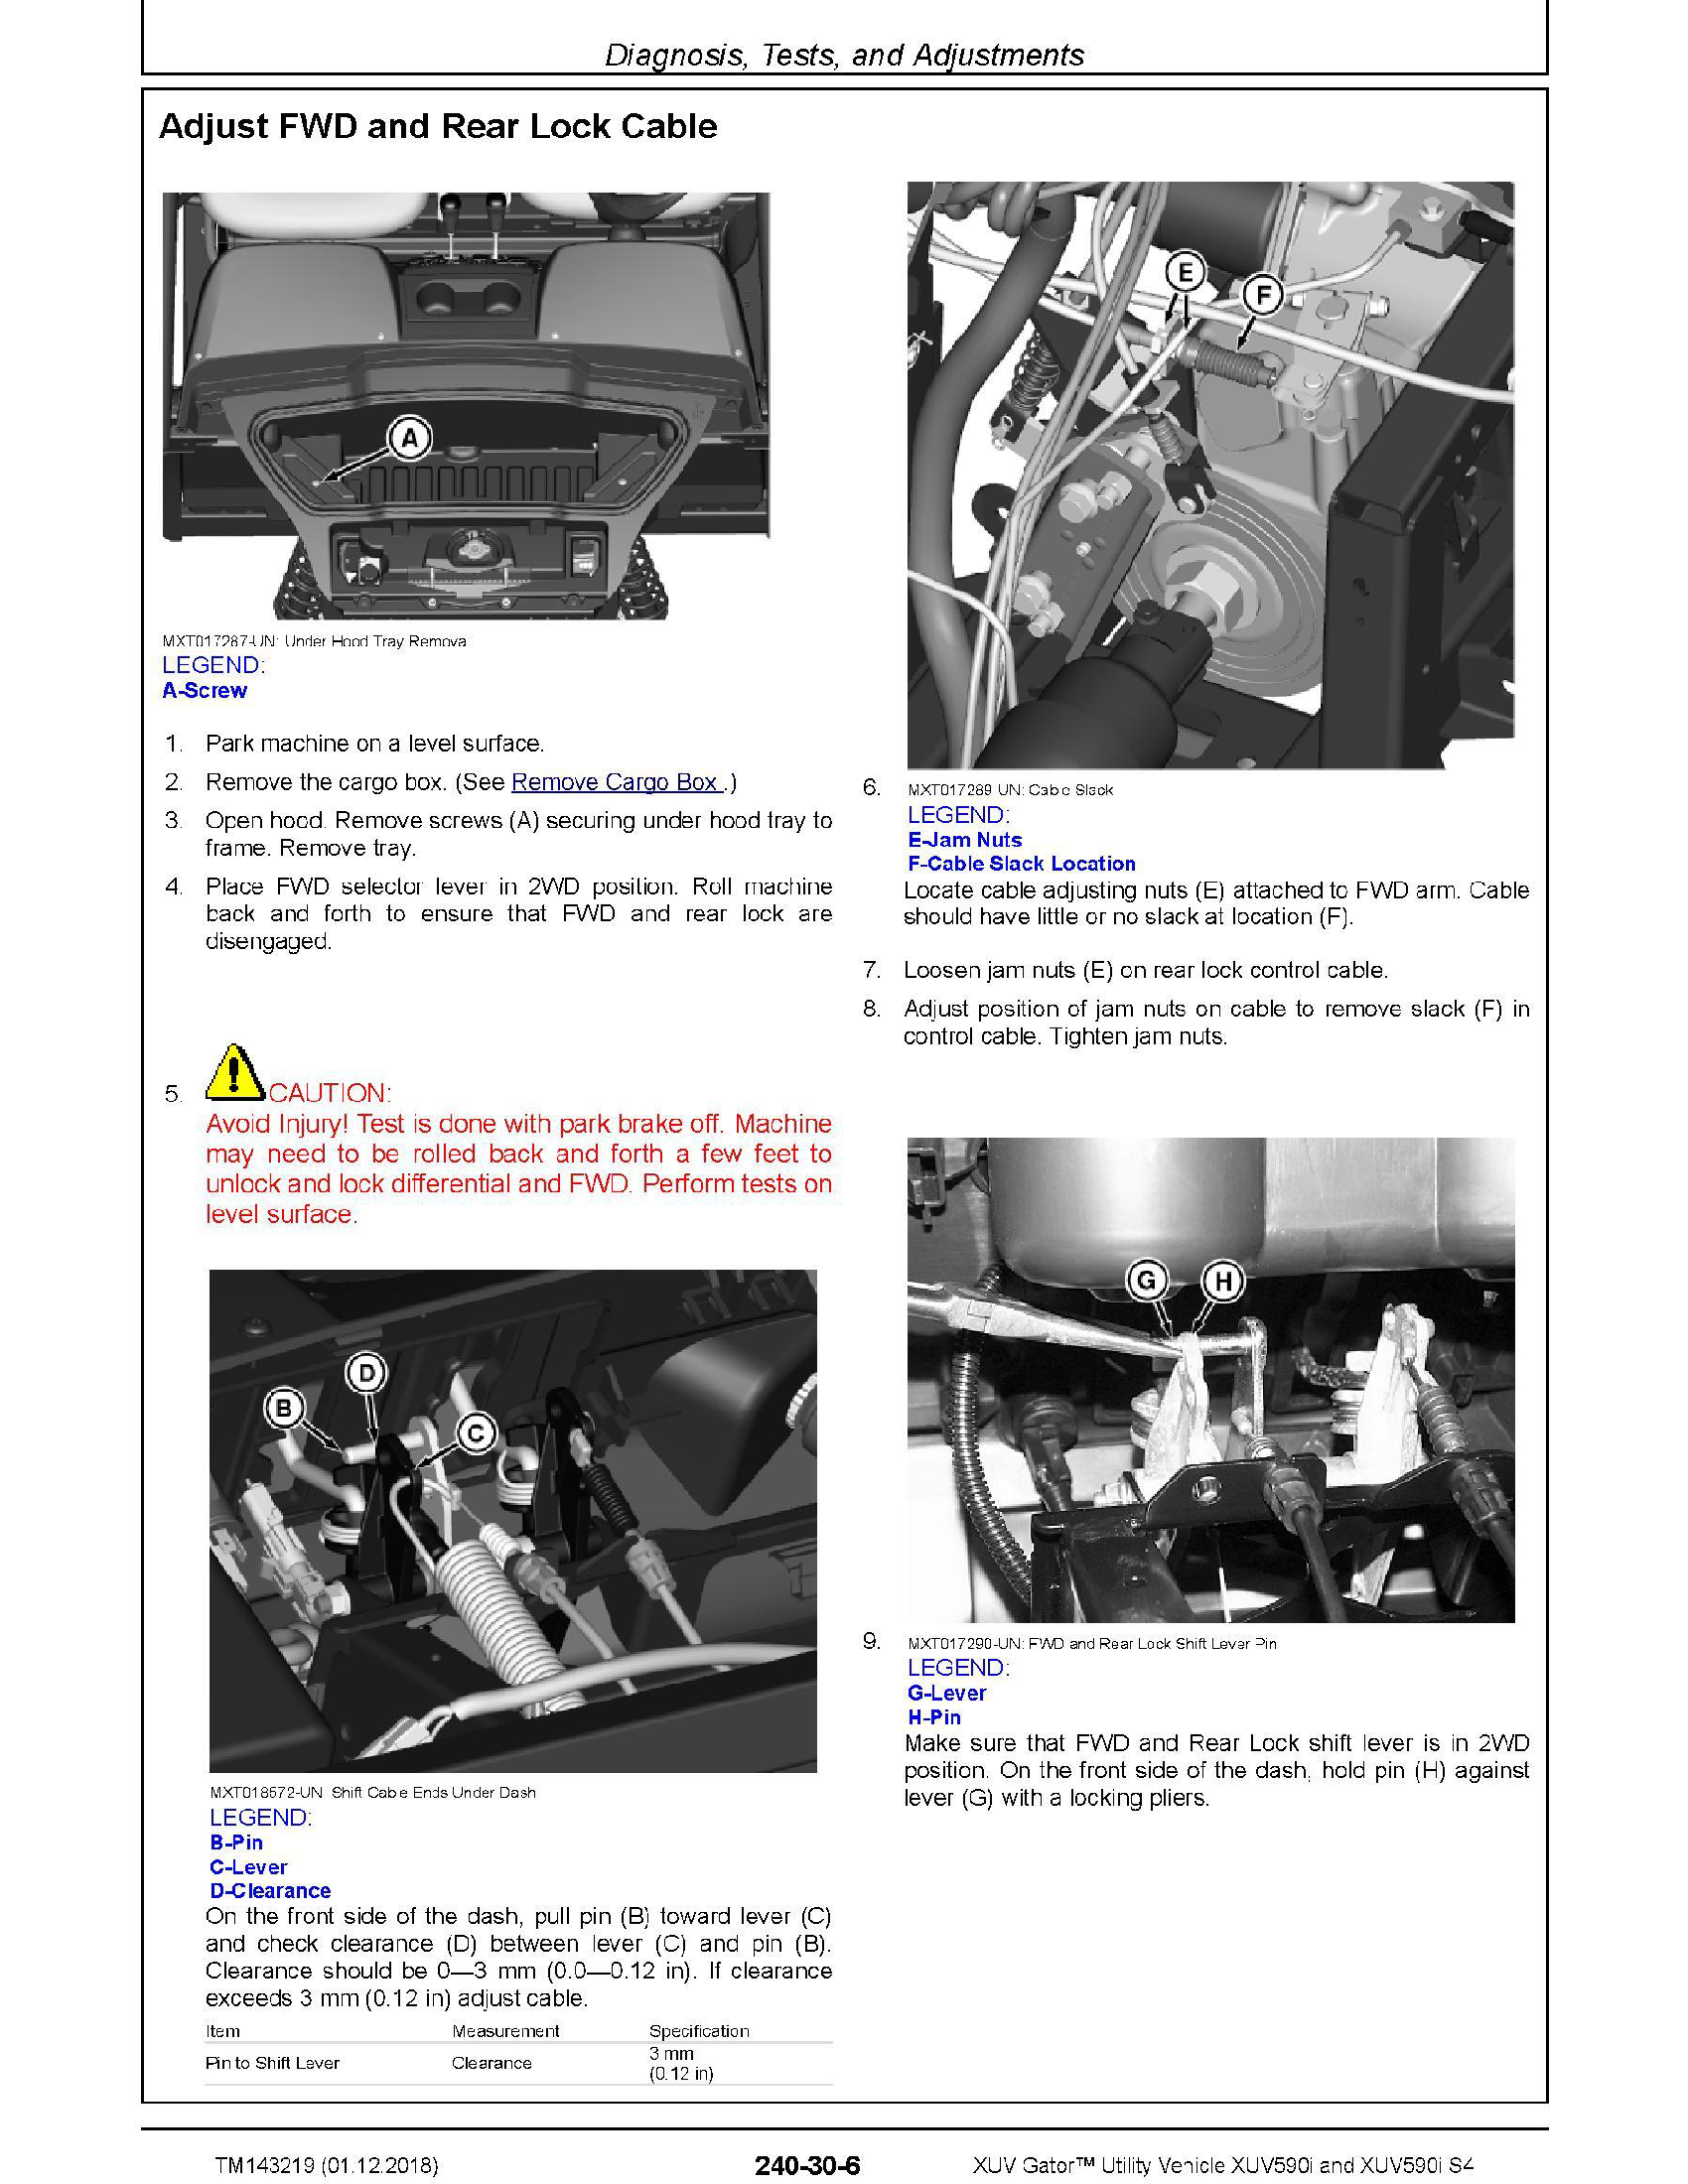 John Deere 1DW772GX manual